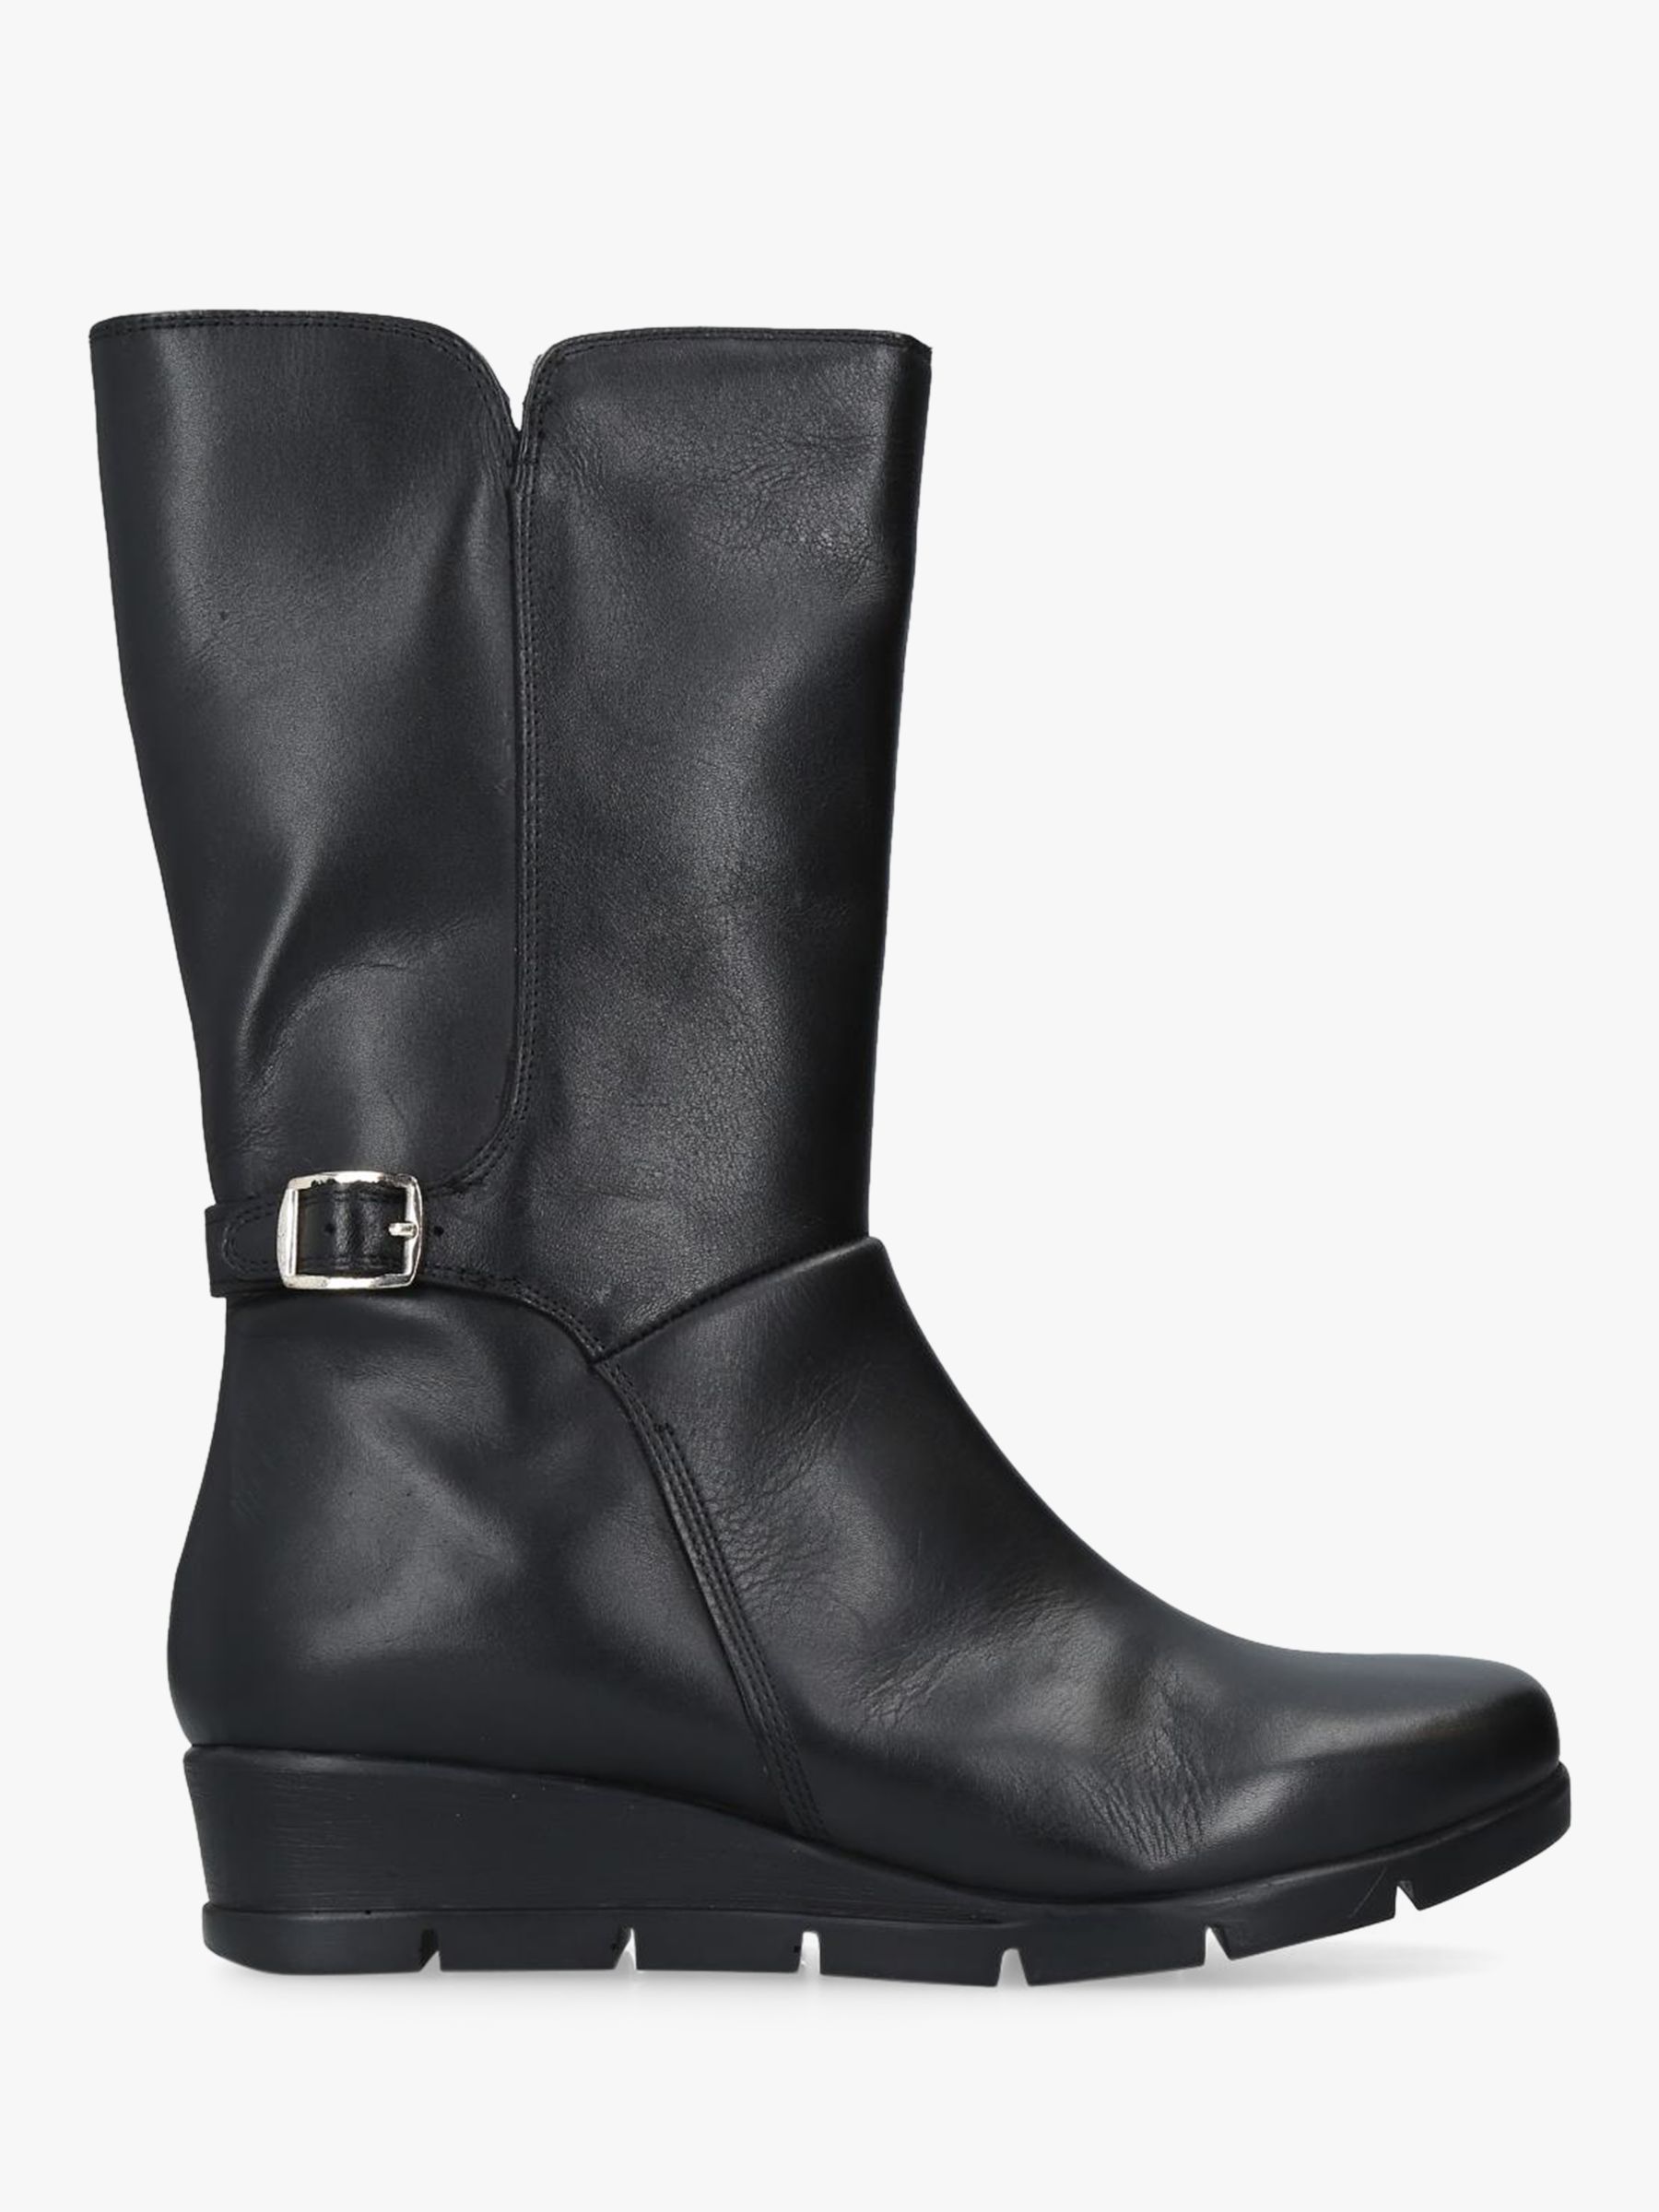 Carvela Comfort Reign Flatform Calf Boots, Black Leather